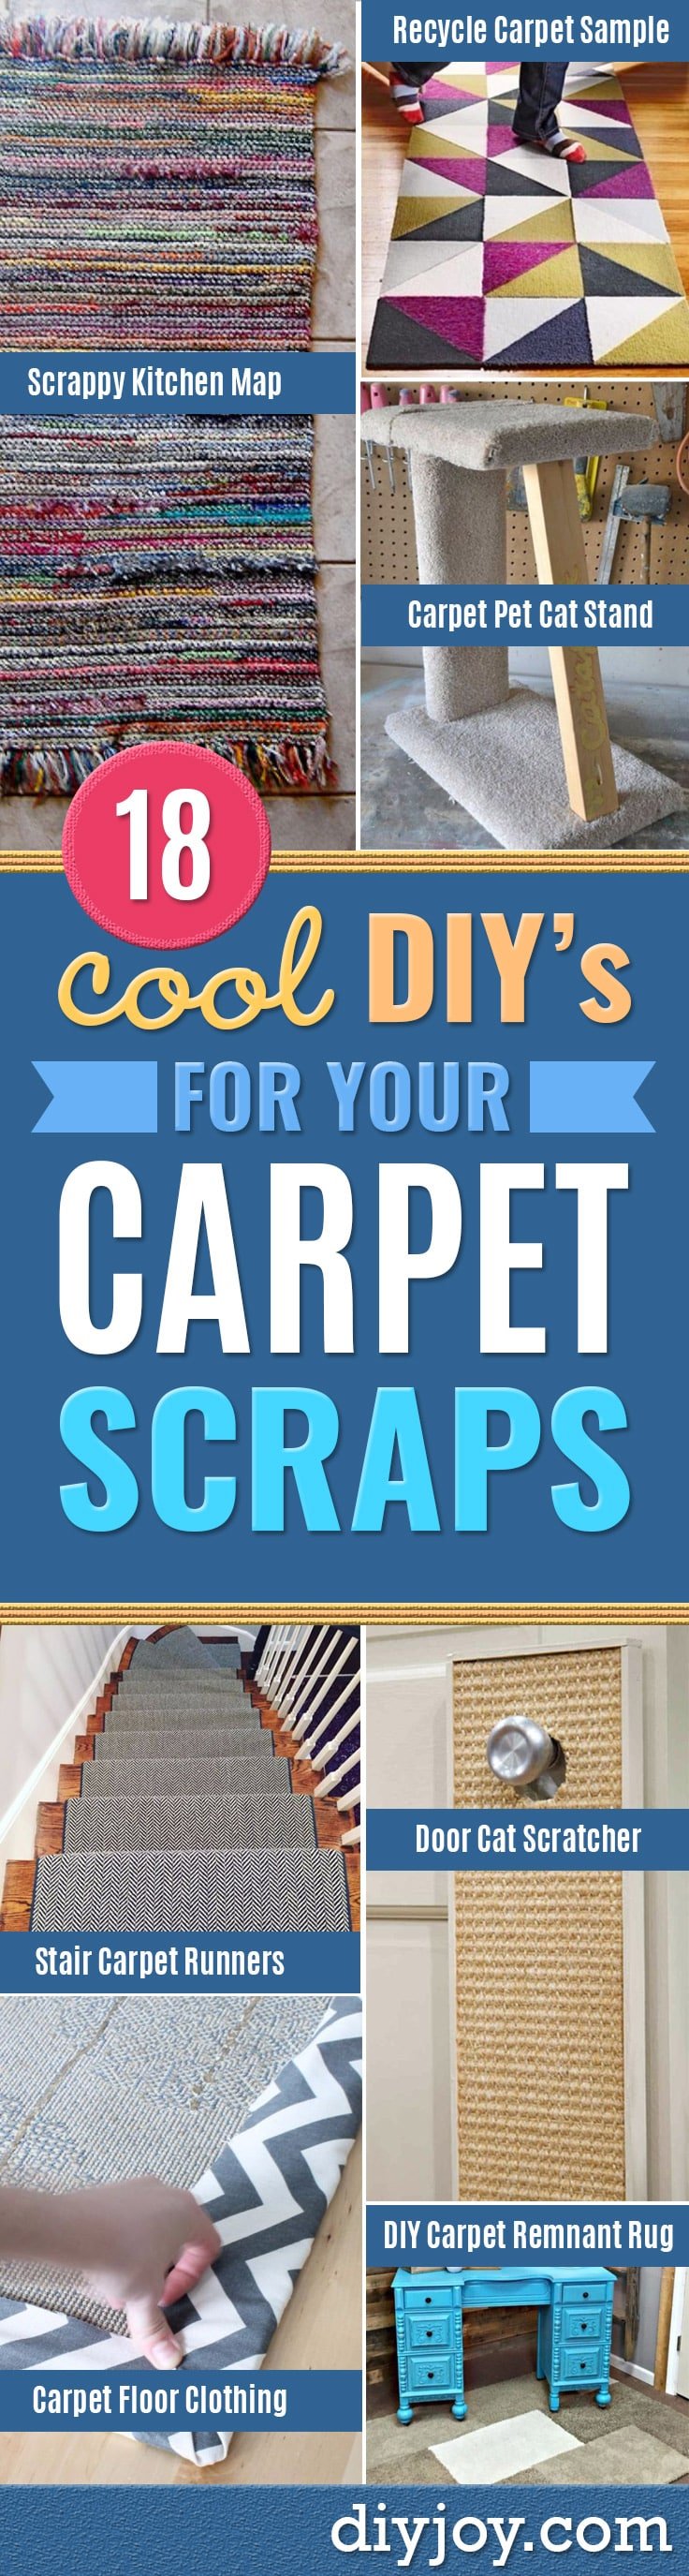 7 Uses for Leftover Carpet Remnants  Leftover carpet, Carpet remnants, Diy  carpet